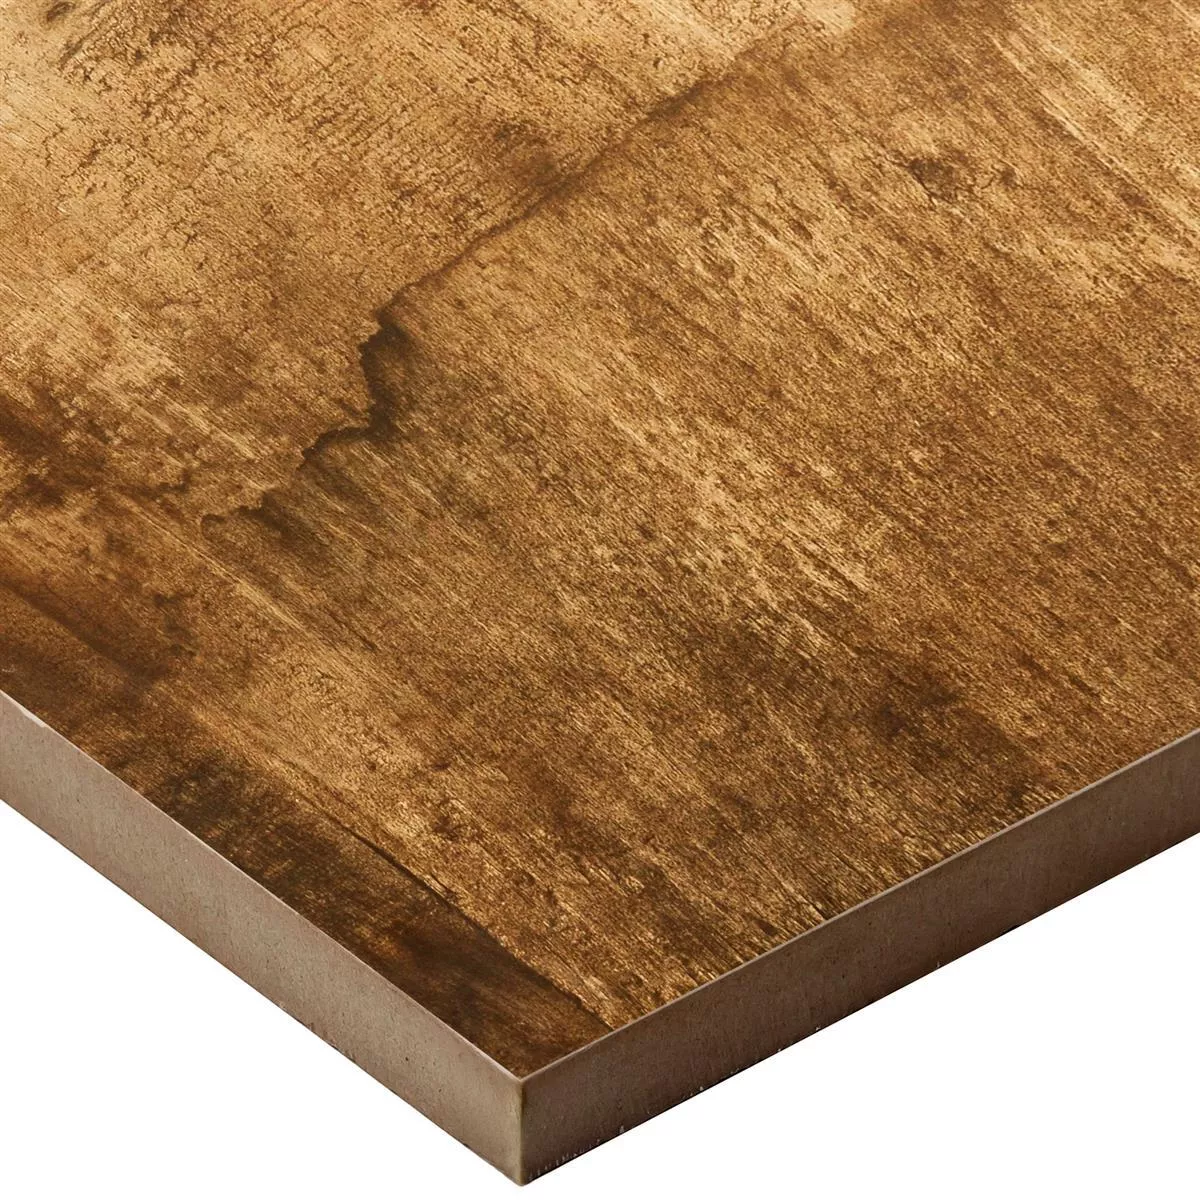 Próbka Wygląd Drewna Płytki Podłogowe Colonia Orzech 45x90cm